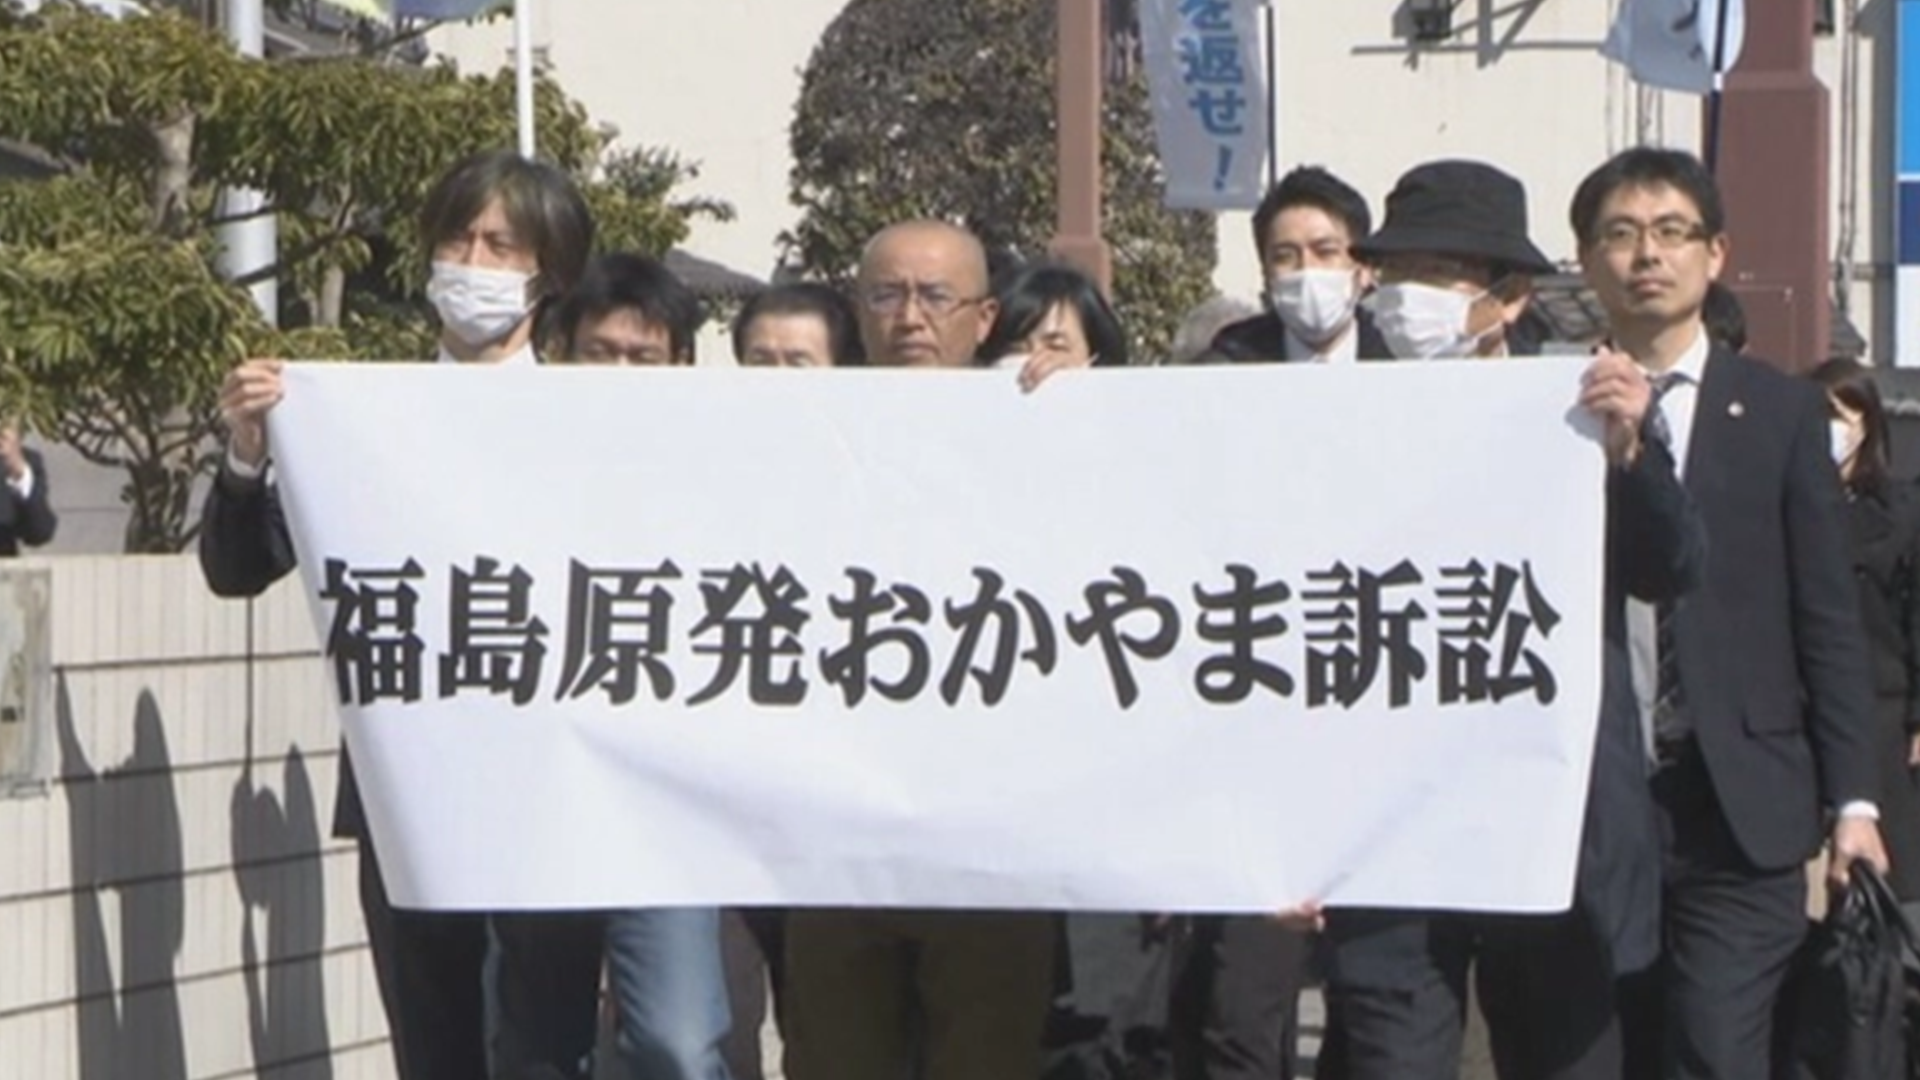 福岛核事故避难者状告日本政府，要求赔偿遭拒